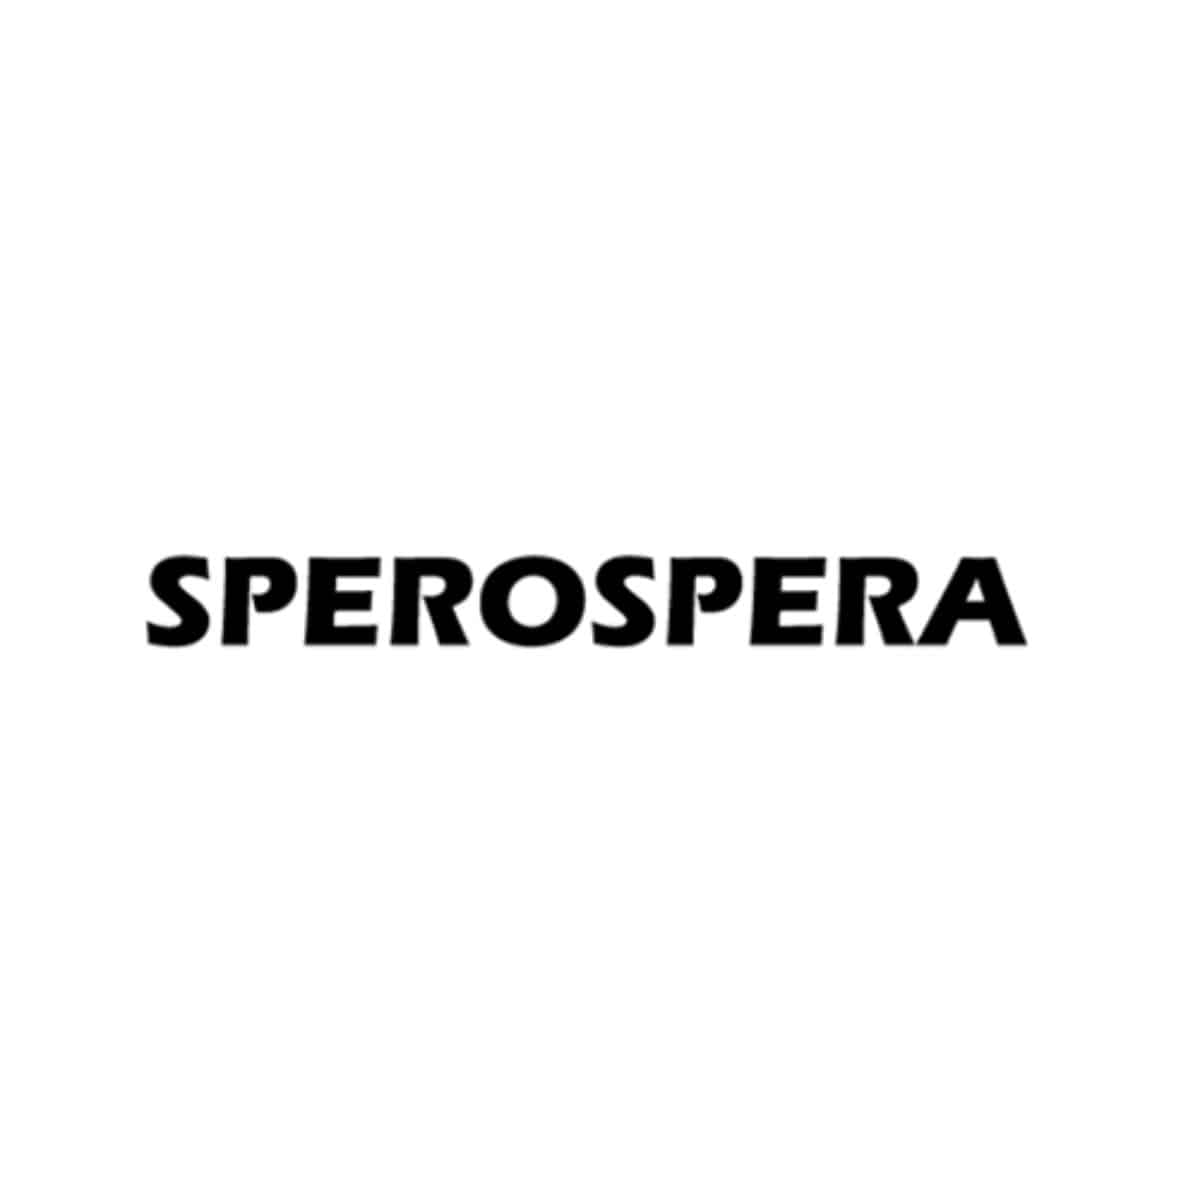 스페로스페라 - 어패럴싯